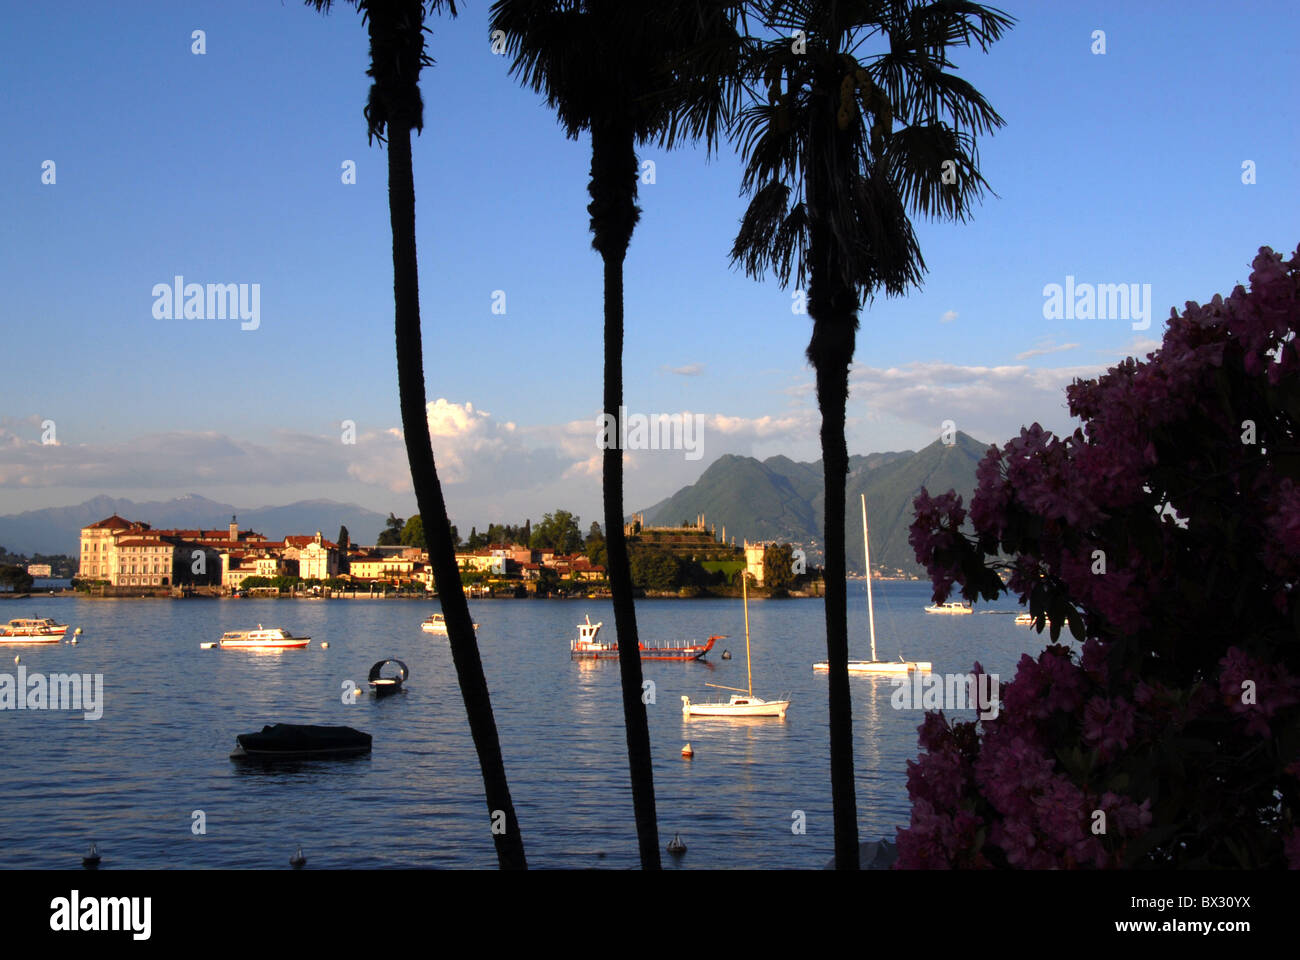 Isola Bella, Lago Maggiore by Stresa, Italy Stock Photo